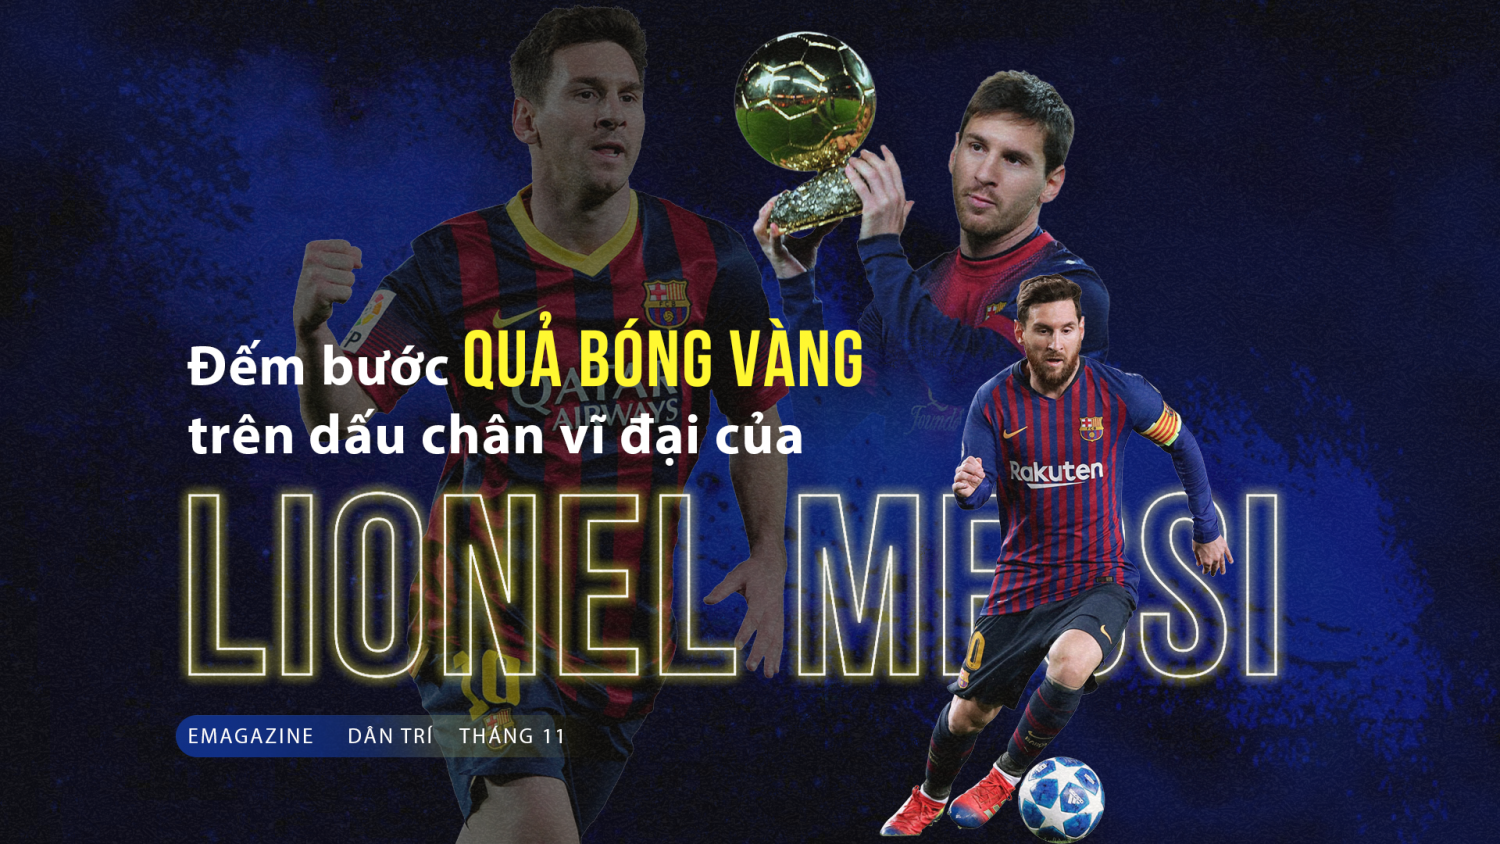 Đếm bước Quả bóng vàng trên dấu chân vĩ đại của Lionel Messi